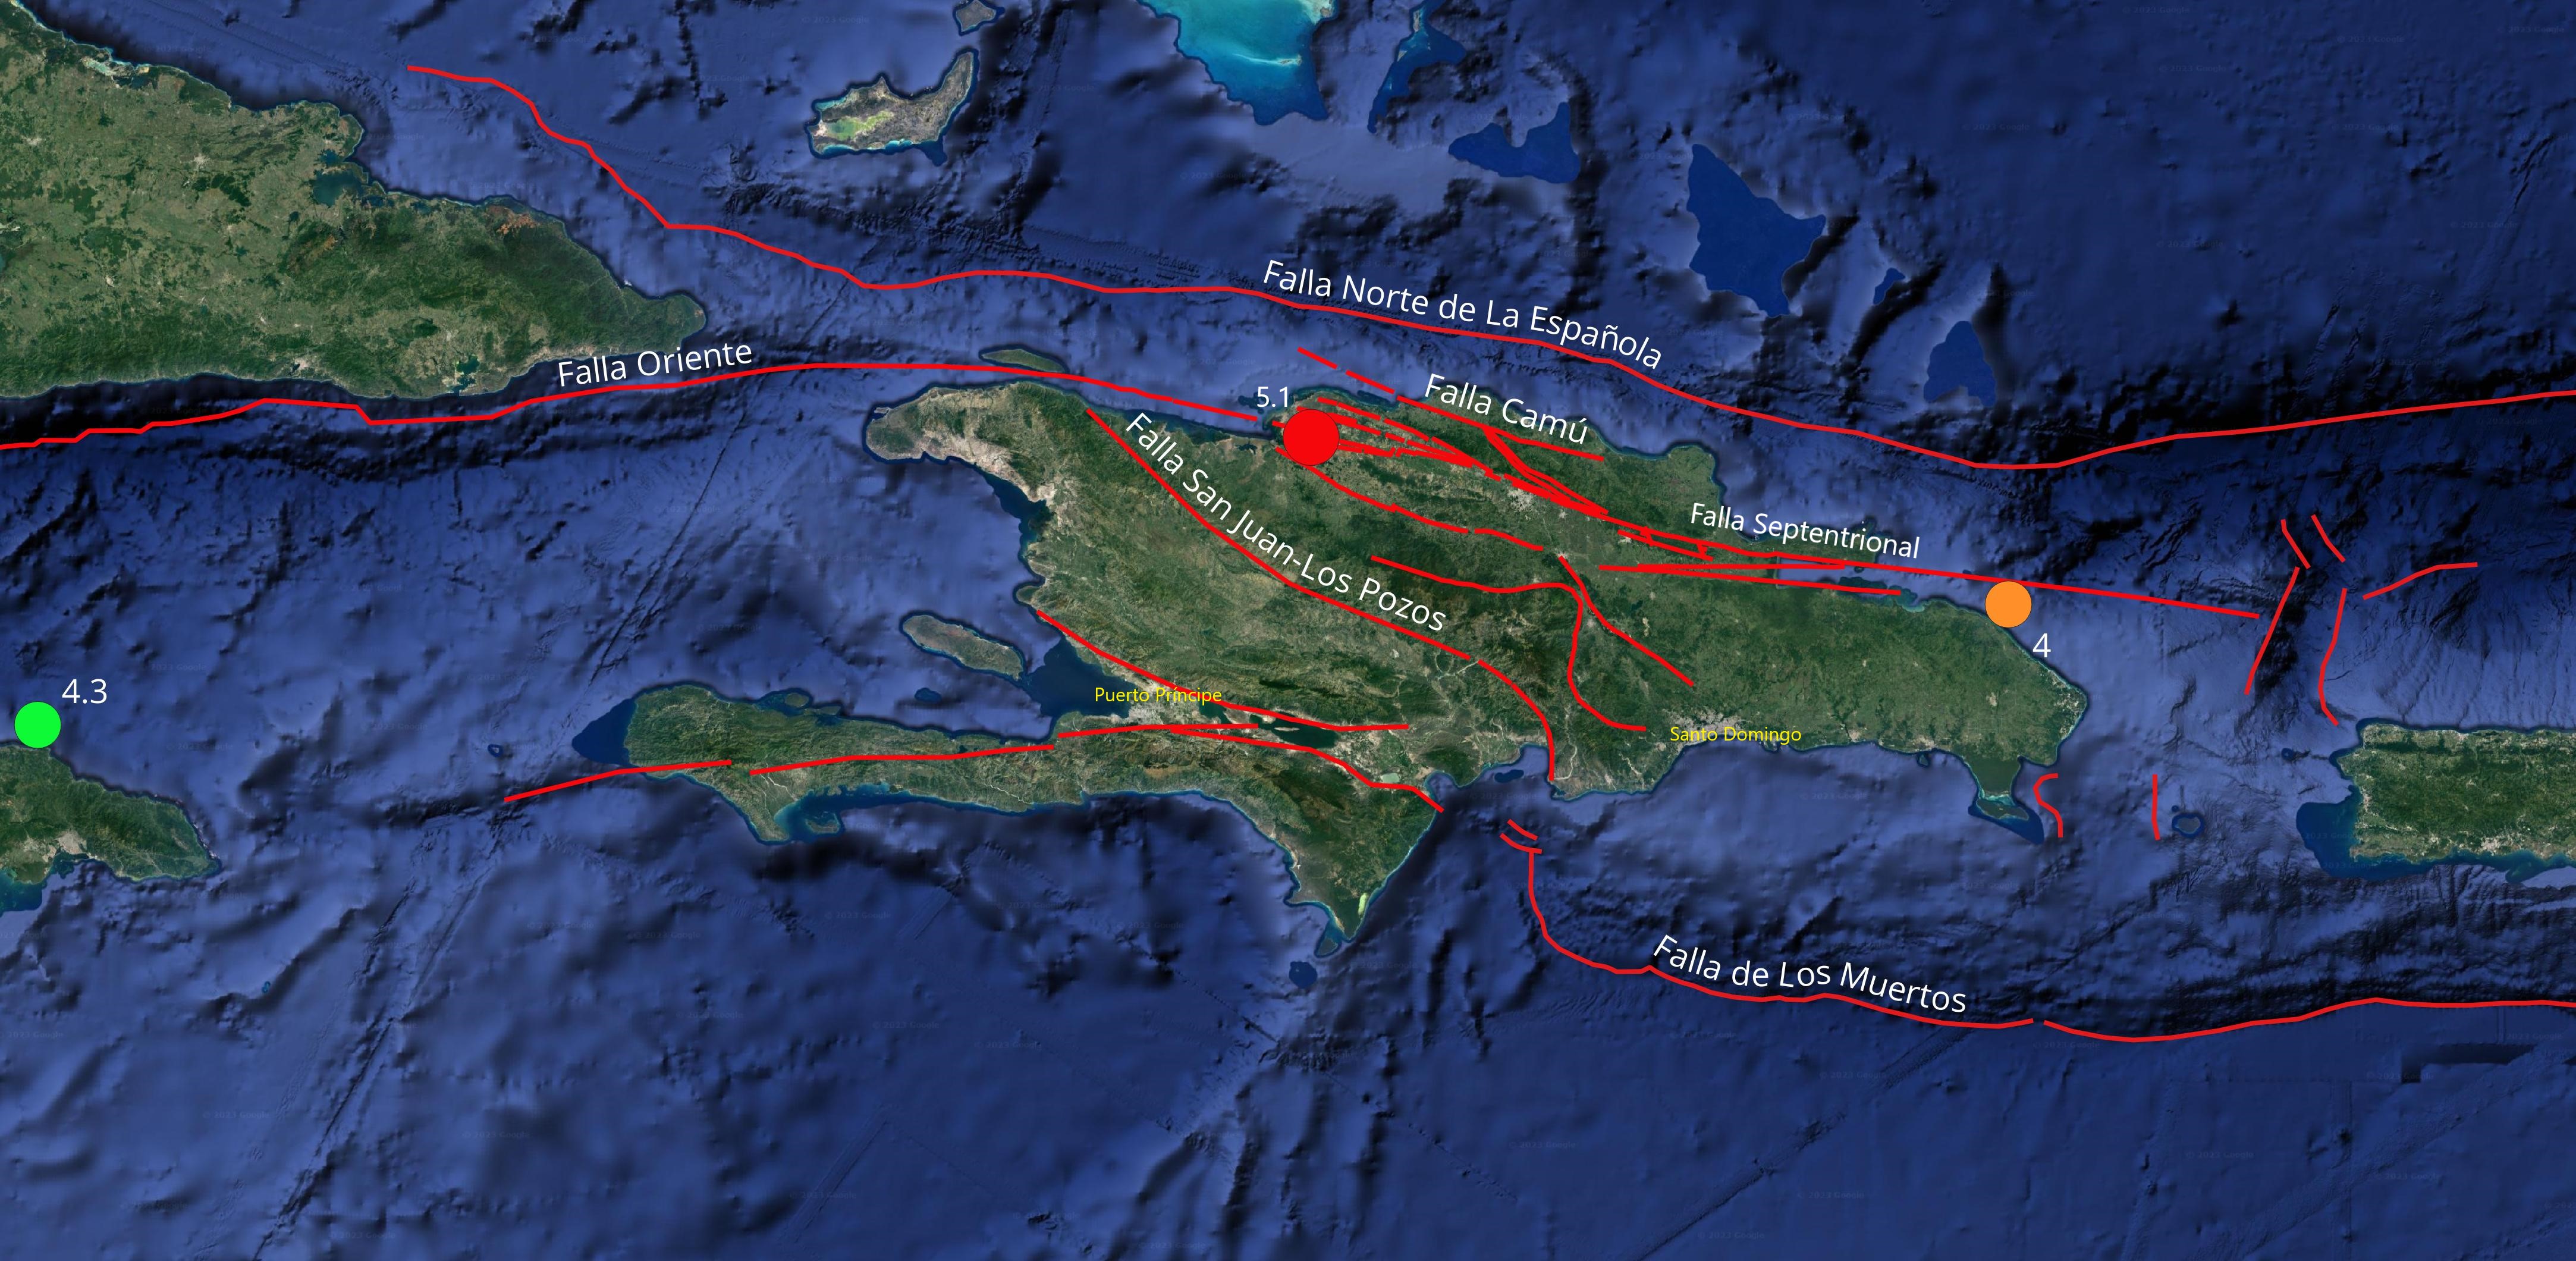 Imagen N° 2: Mapa parcial del Caribe mostrando los 3 eventos de magnitudes superiores o igual a 4.0. Su magnitud (Escala Richter) esta indicada al lado del epicentro)